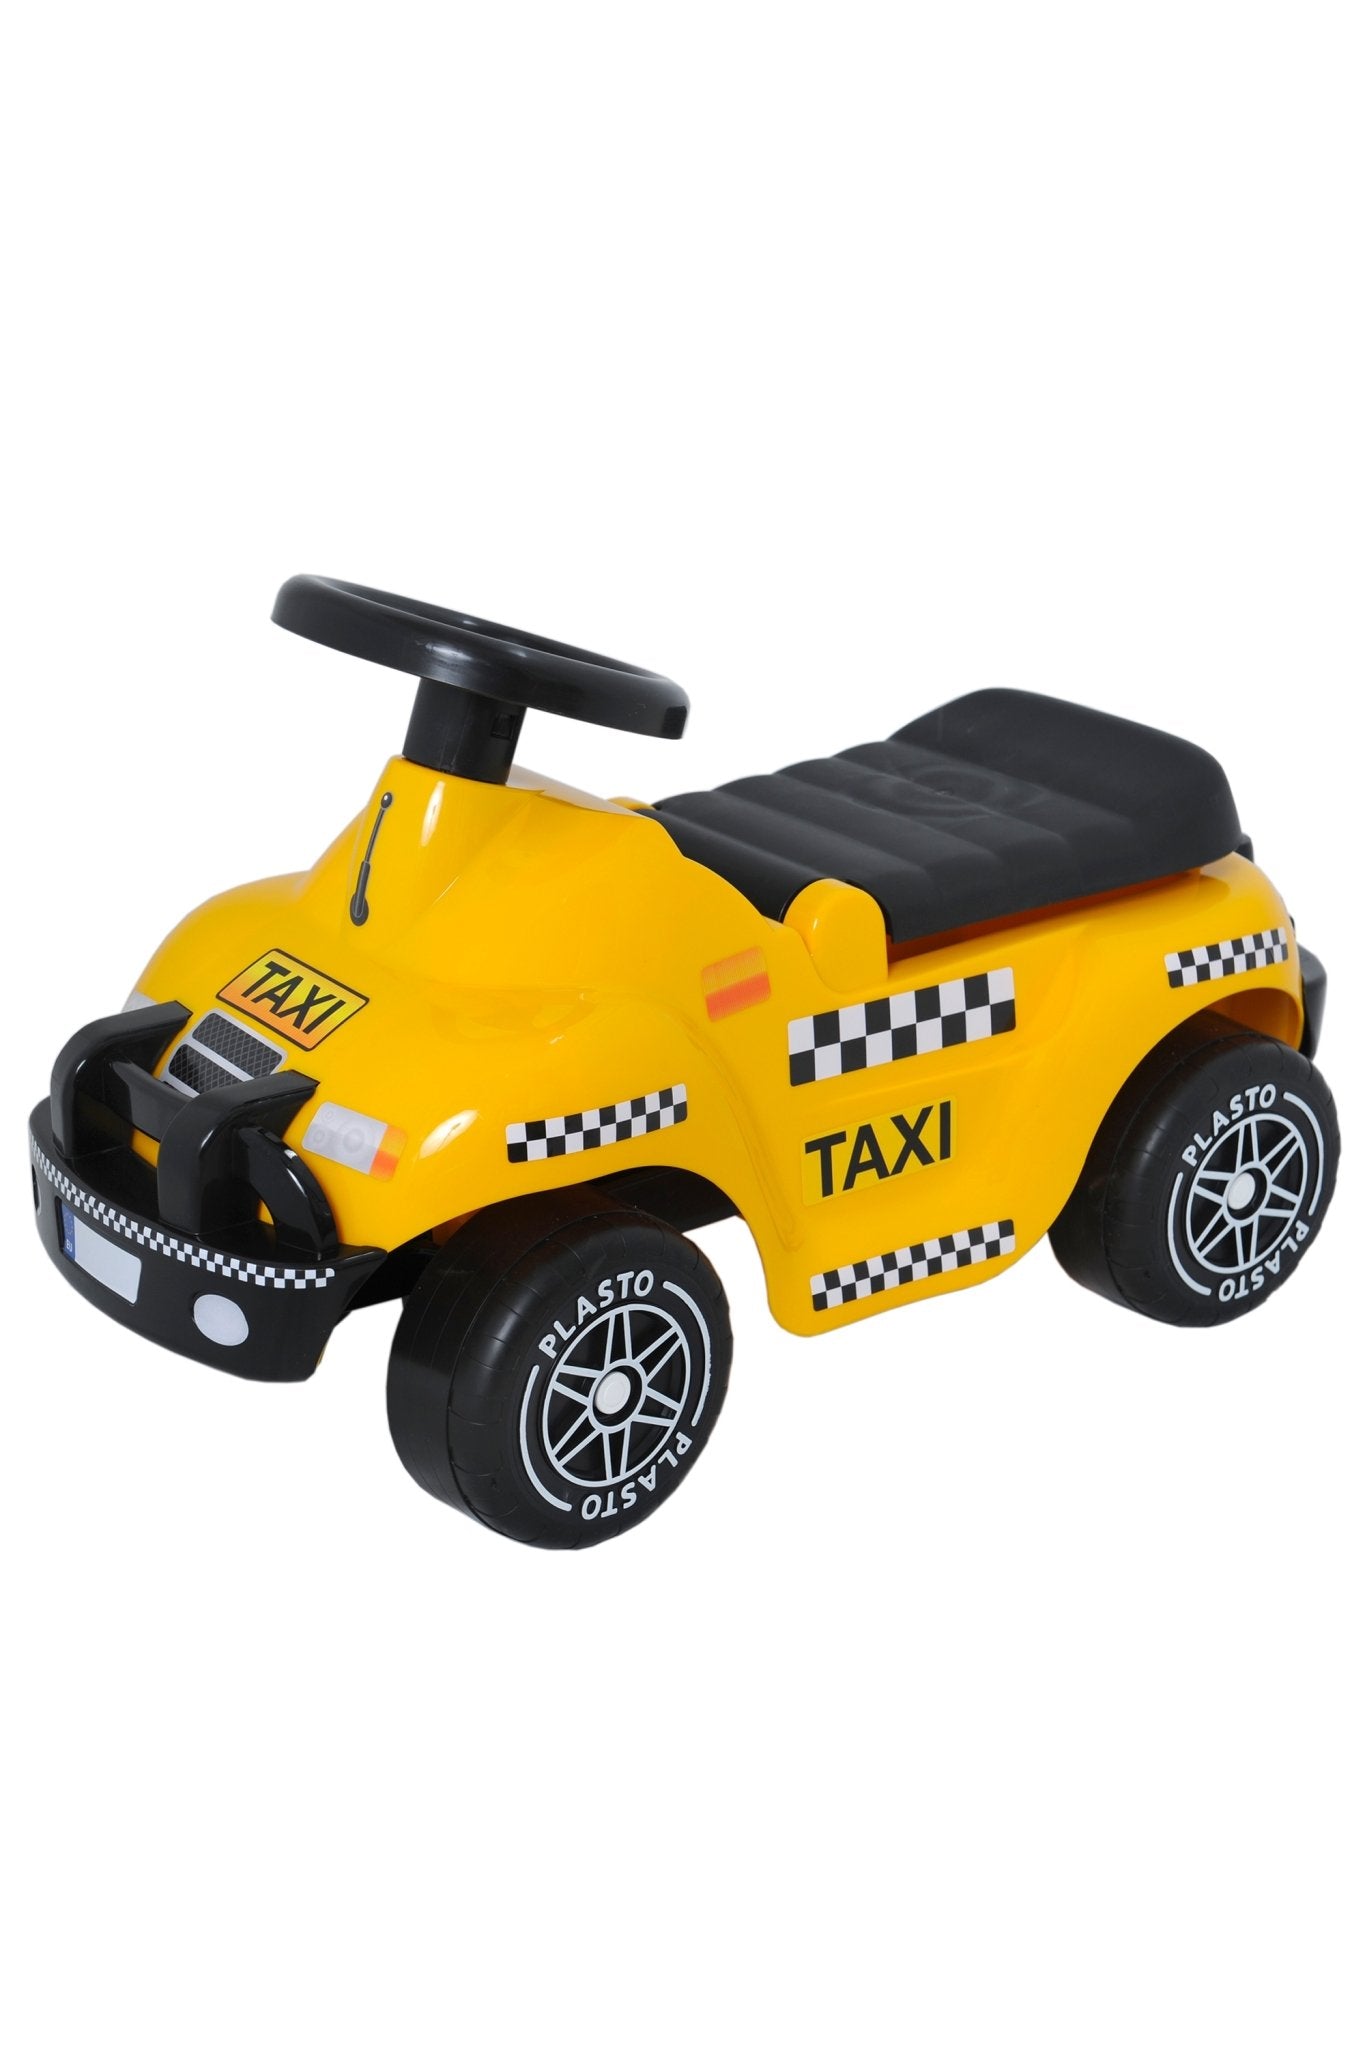 Toddler taxi car, silent wheels, 60cm - Koko-Kamel.com